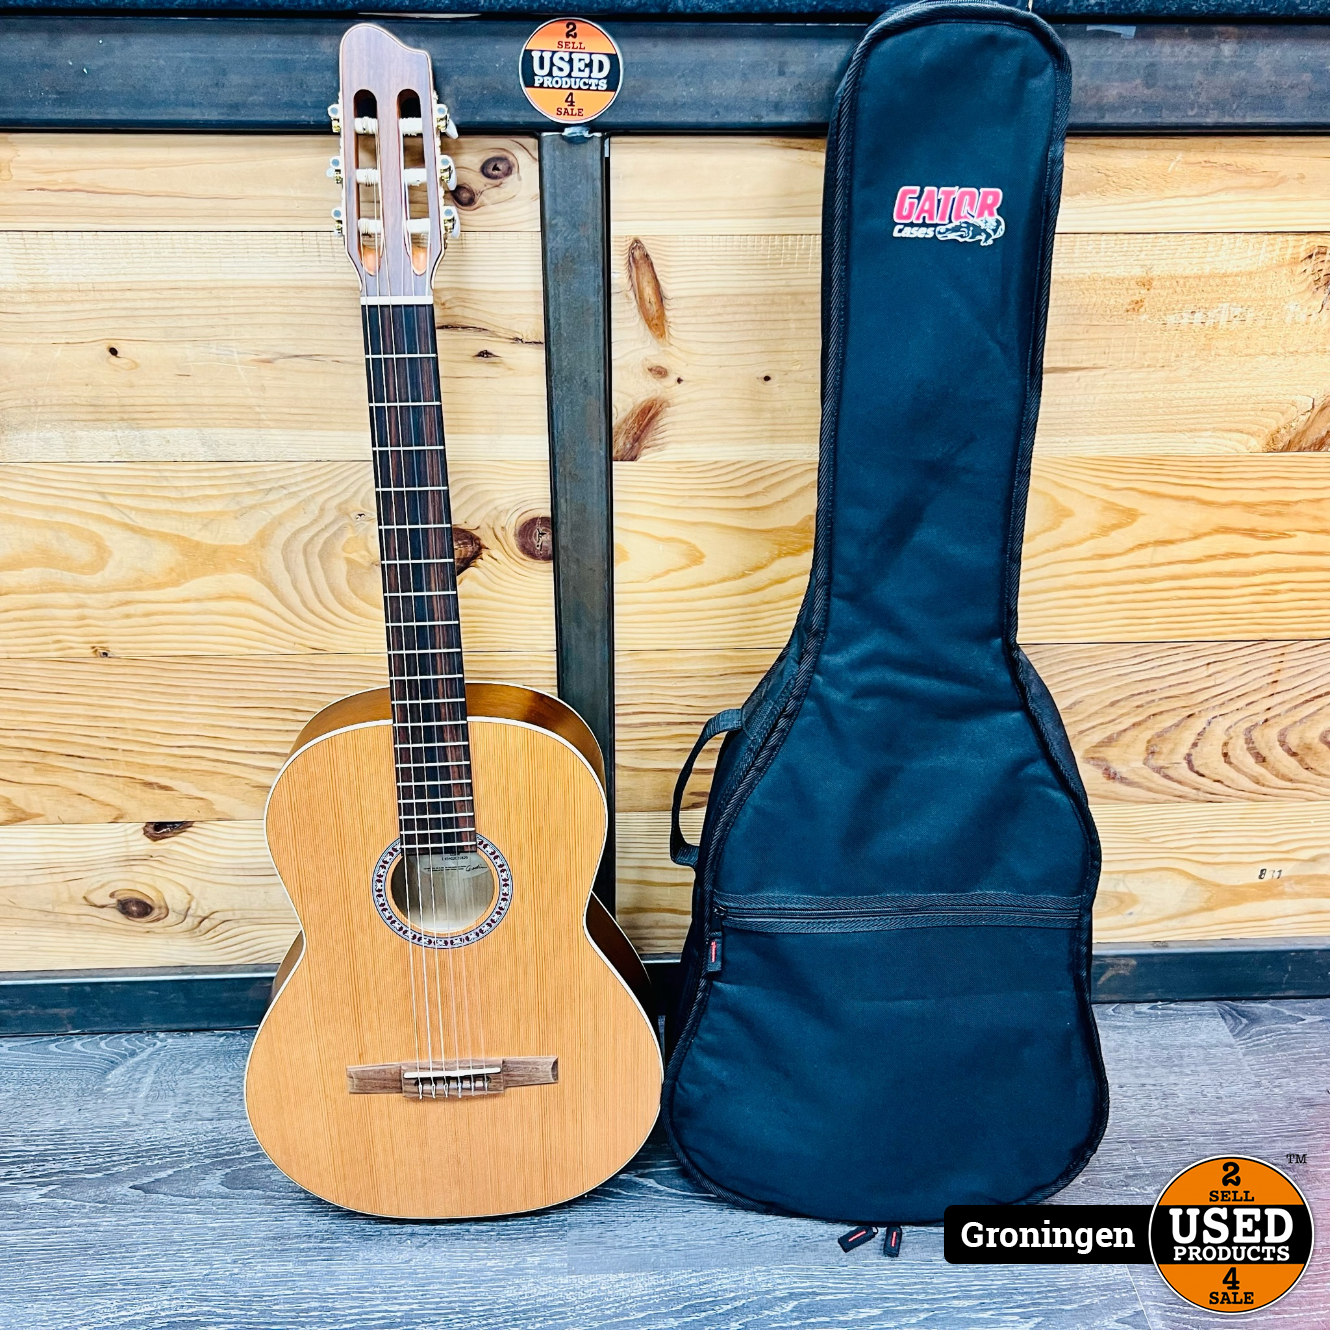 twaalf erectie Omzet Godin Etude Klassieke gitaar | incl. Gator Cases gevoerde gitaartas - Used  Products Groningen